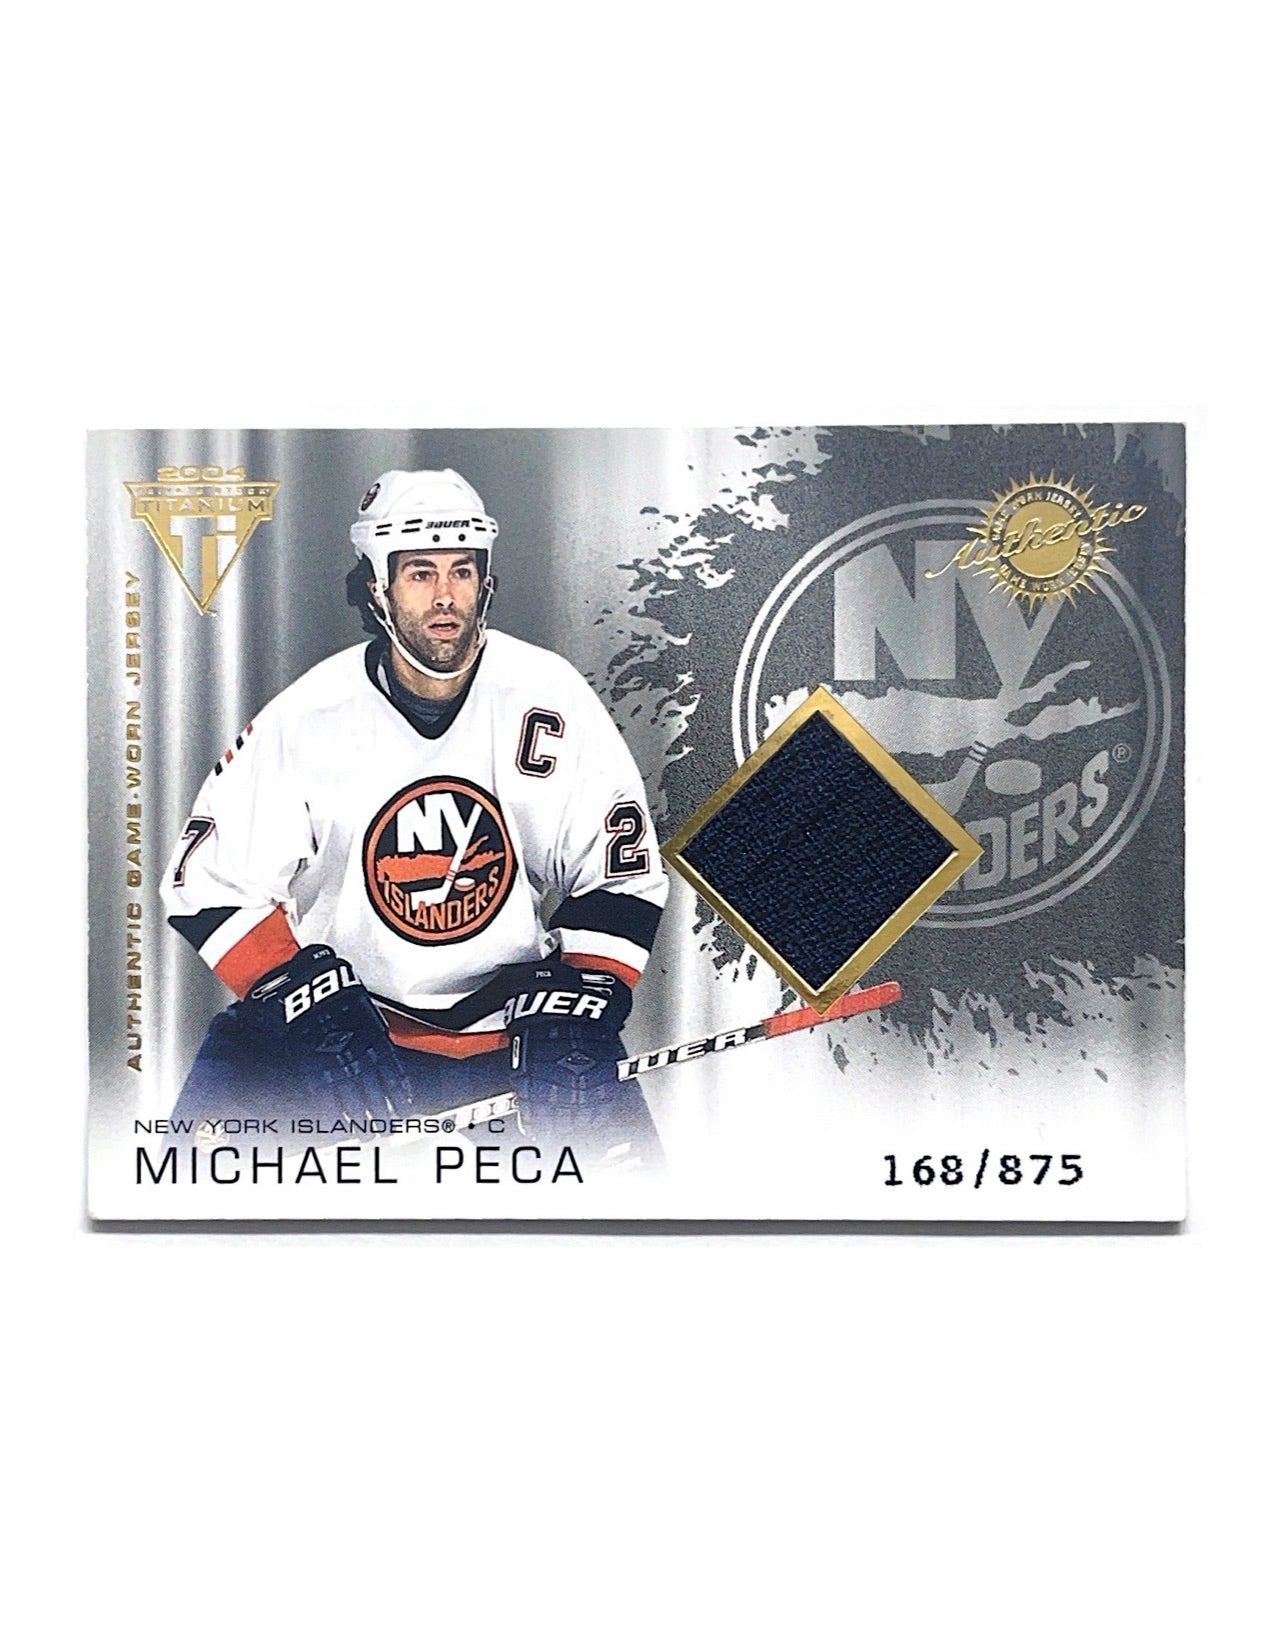 Michael Peca 2003-04 Private Stock Titanium Jersey #168 - 168/875